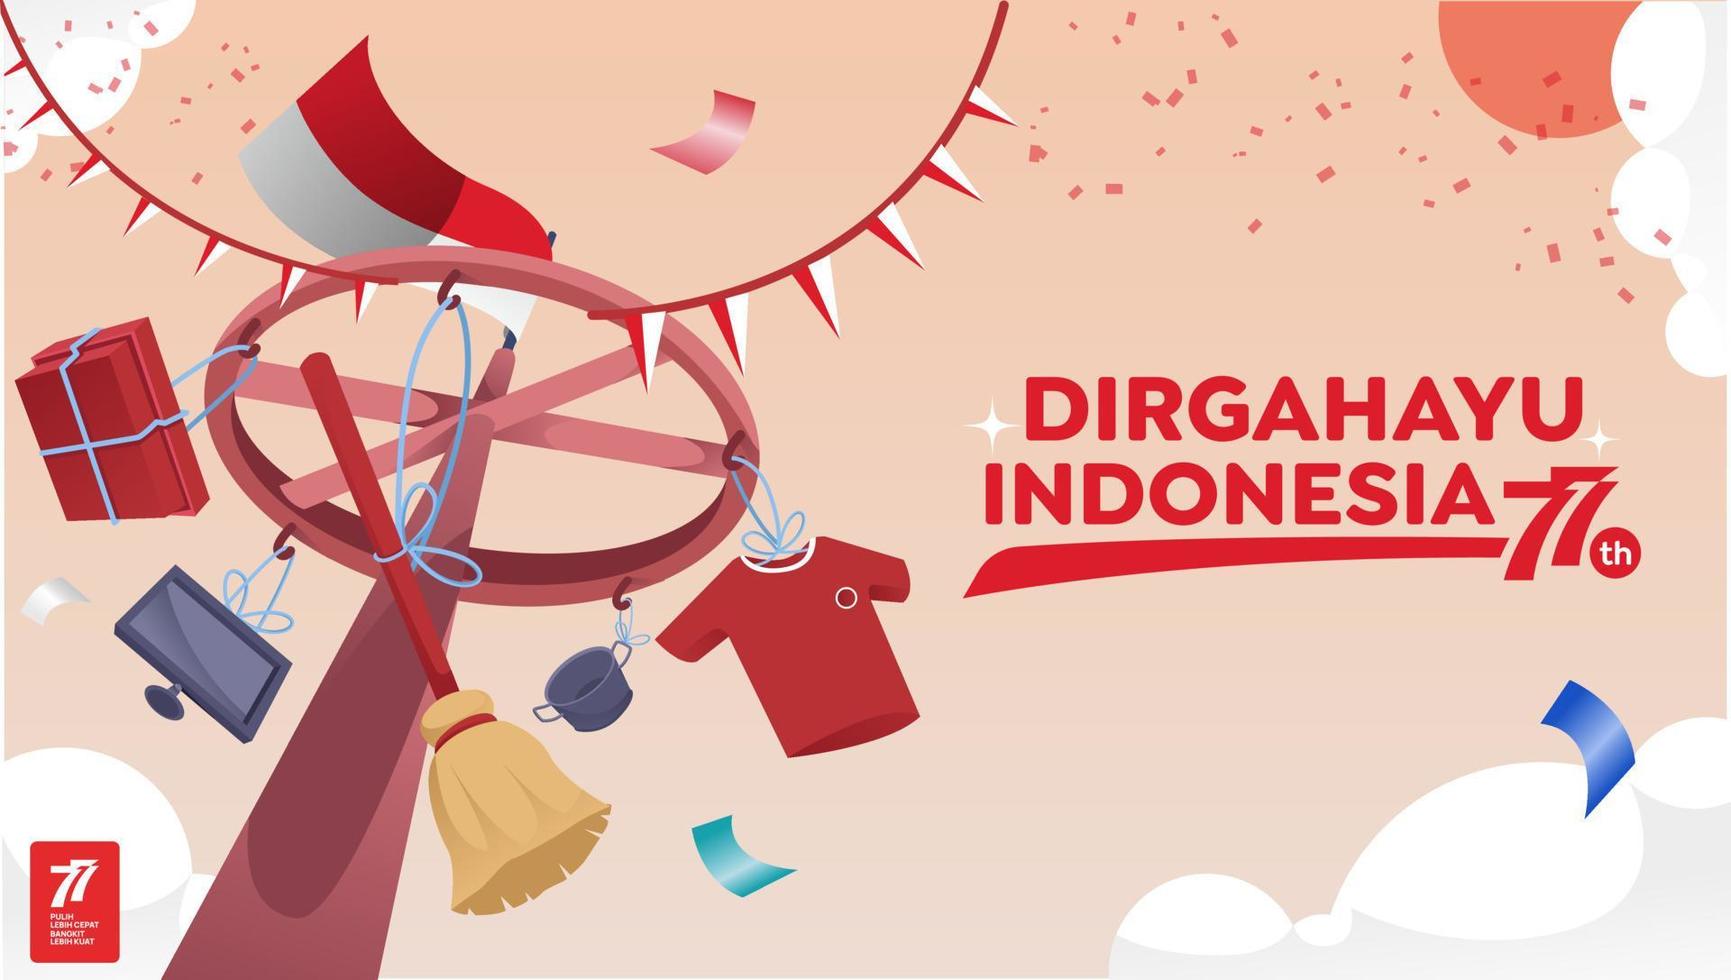 indonesien unabhängigkeitstag 17. august mit traditioneller spielkonzeptillustration. 77 Tahun Kemerdekaan Indonesien bedeutet 77 Jahre Unabhängigkeitstag Indonesiens vektor